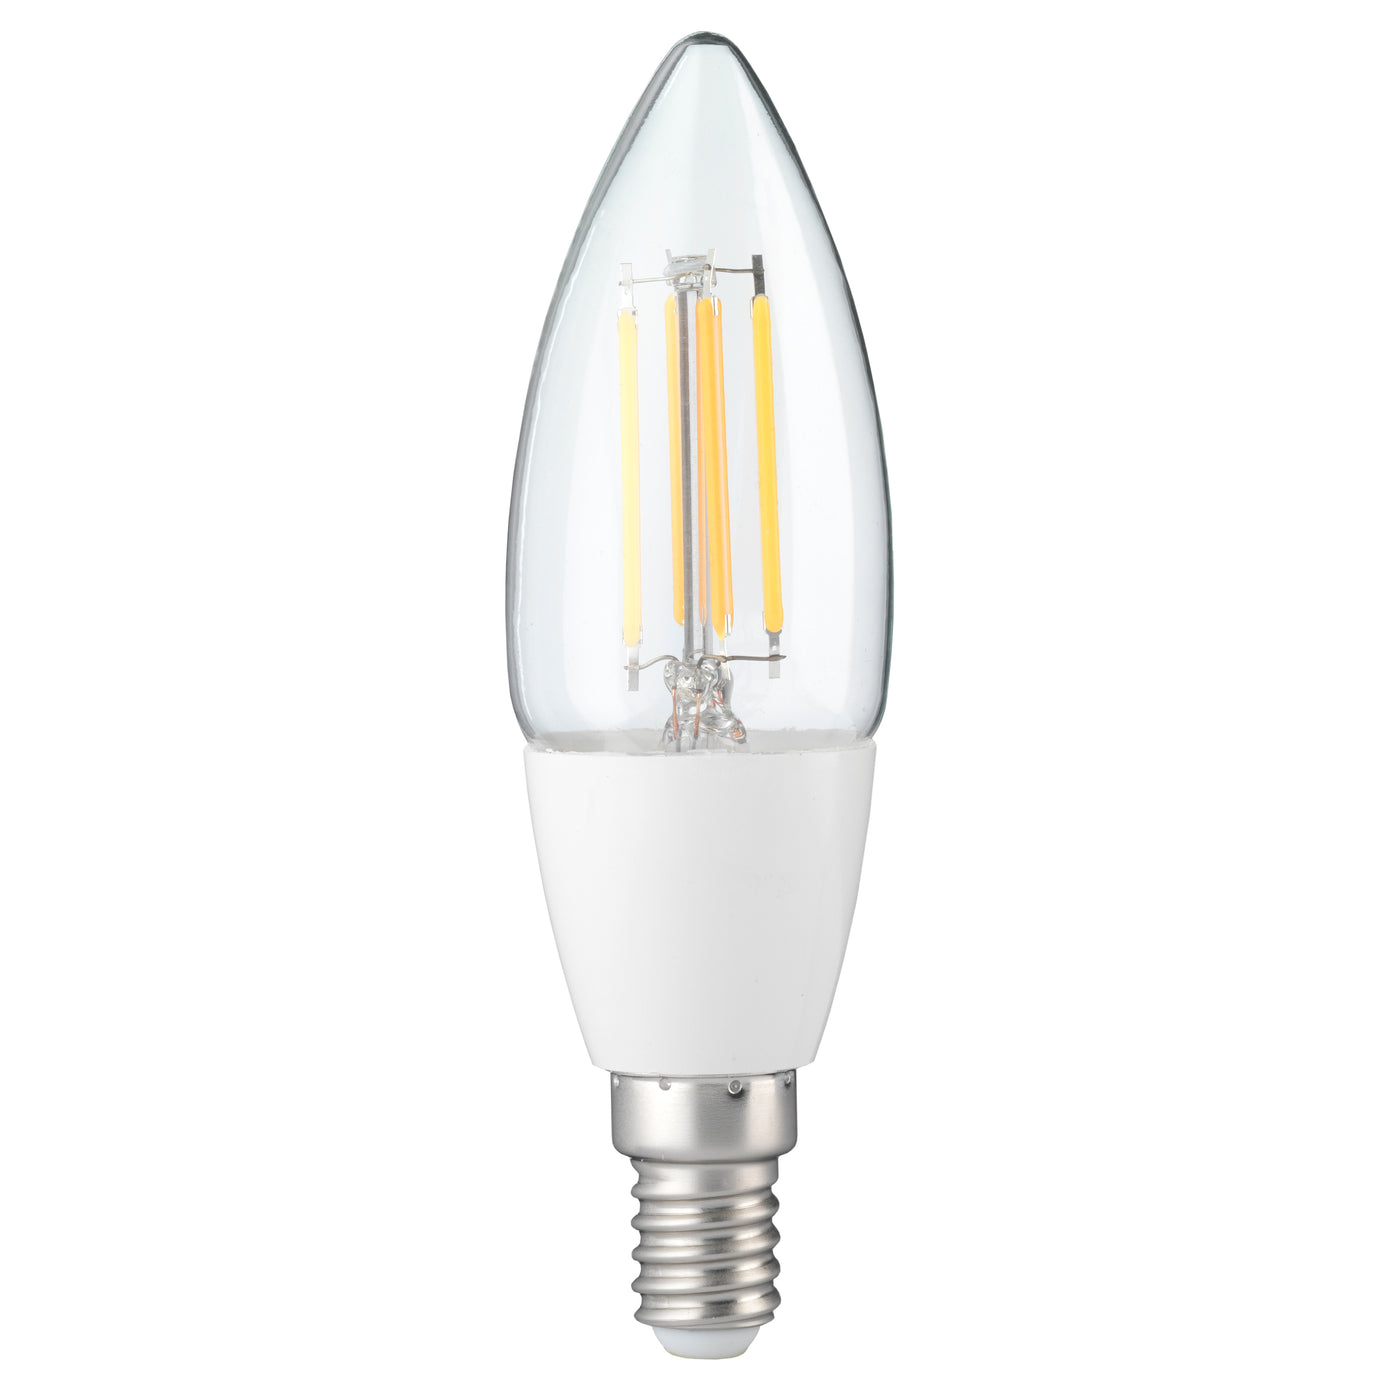 Alecto SMARTLIGHT130 - Smarte-LED-Glühlampe mit WLAN